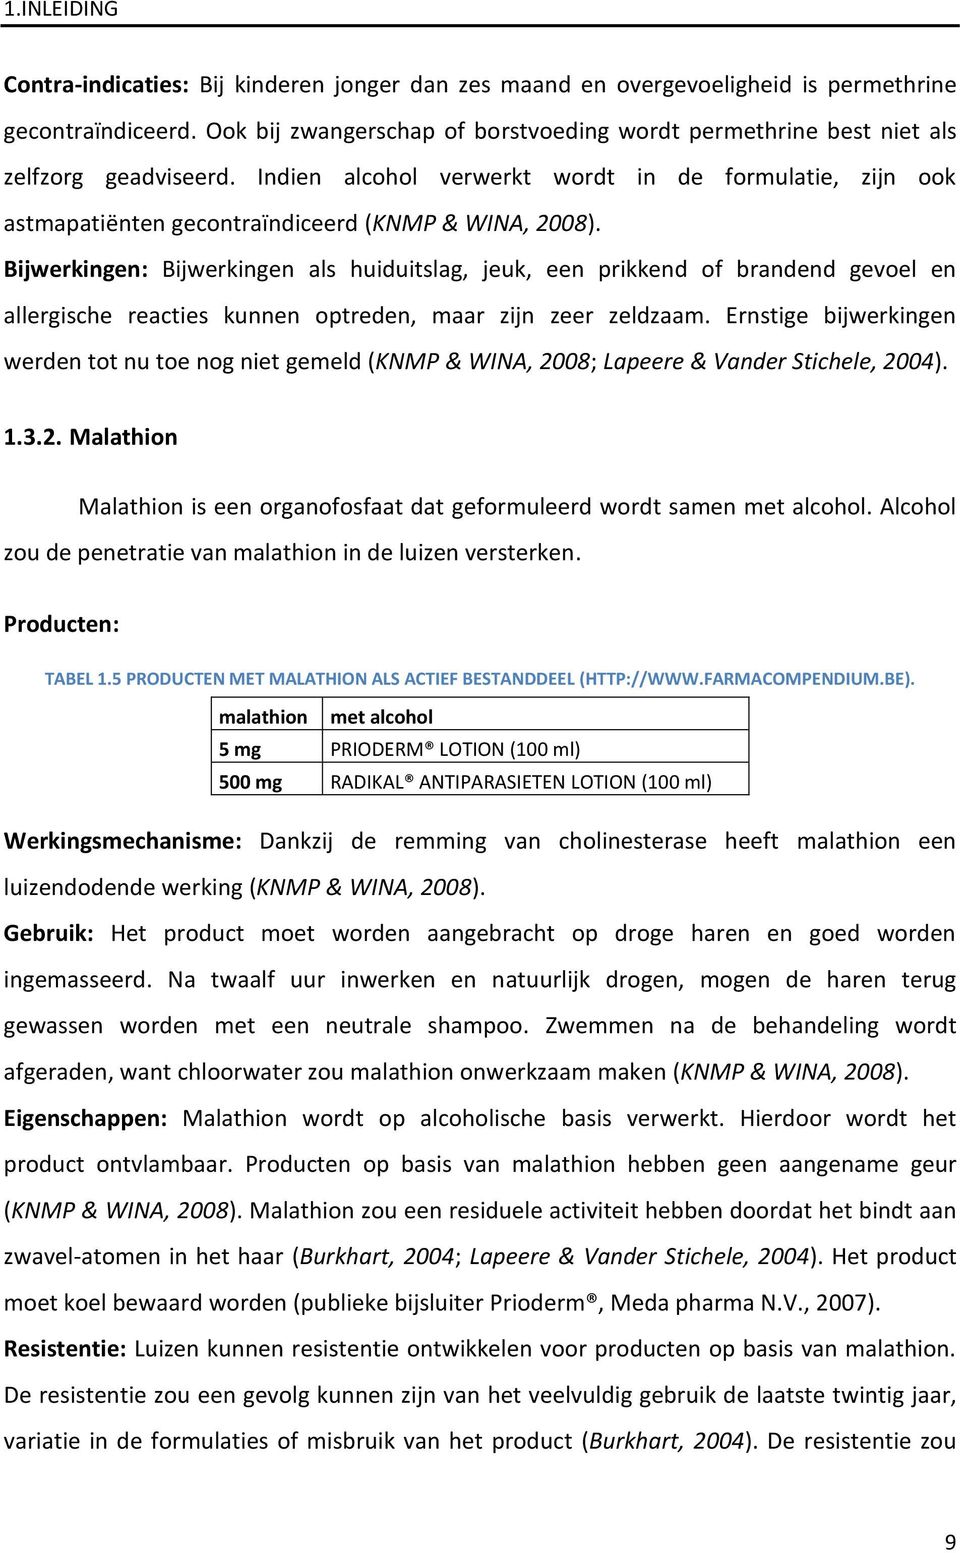 Indien alcohol verwerkt wordt in de formulatie, zijn ook astmapatiënten gecontraïndiceerd (KNMP & WINA, 2008).